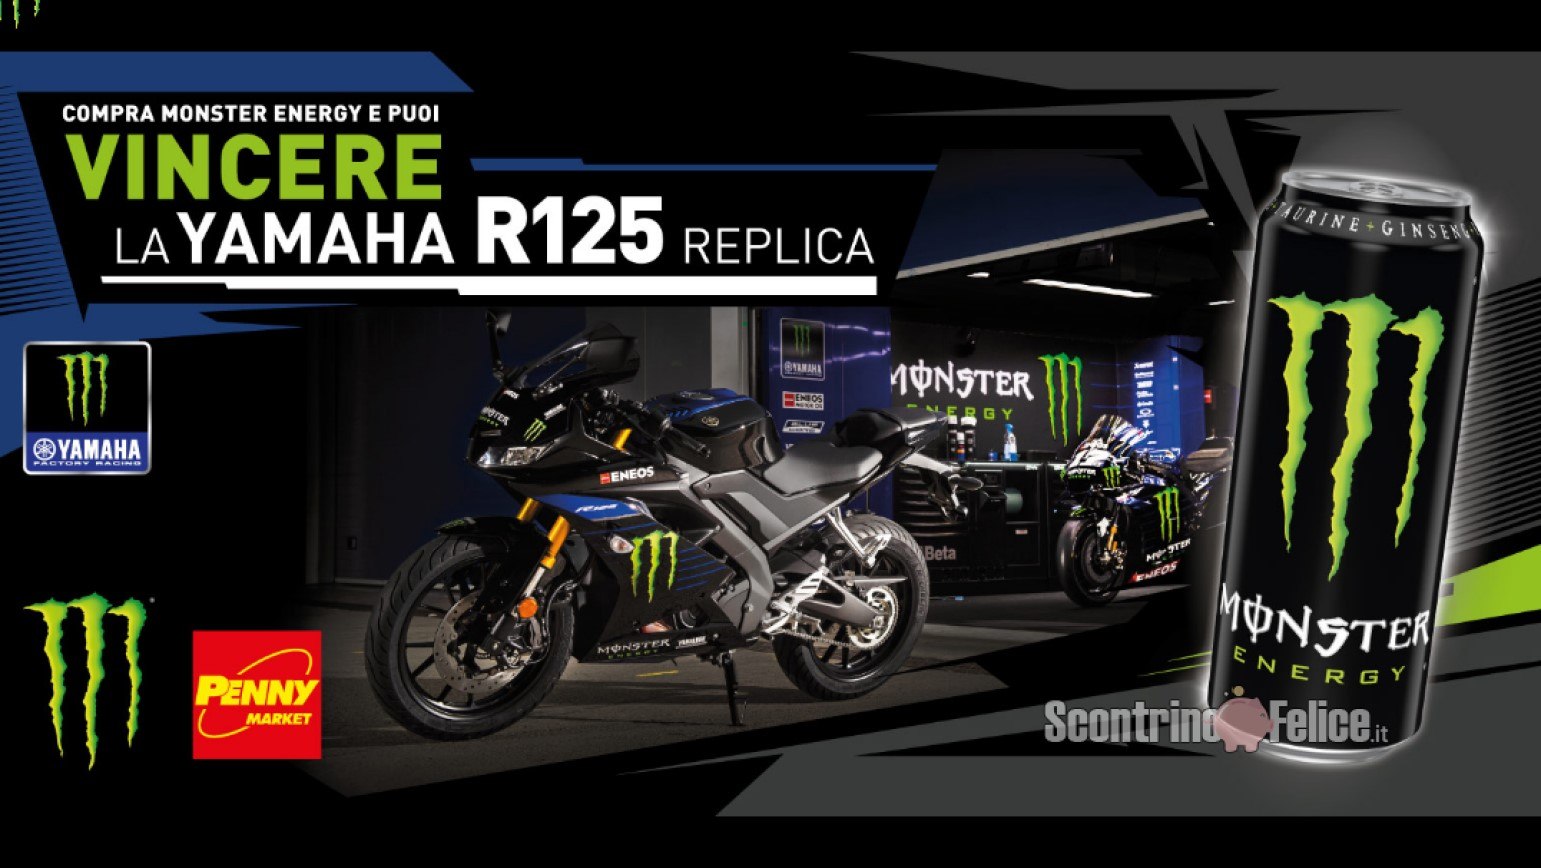 Concorso Monster Energy da Penny Market vinci 1 moto Yamaha R125 Replica